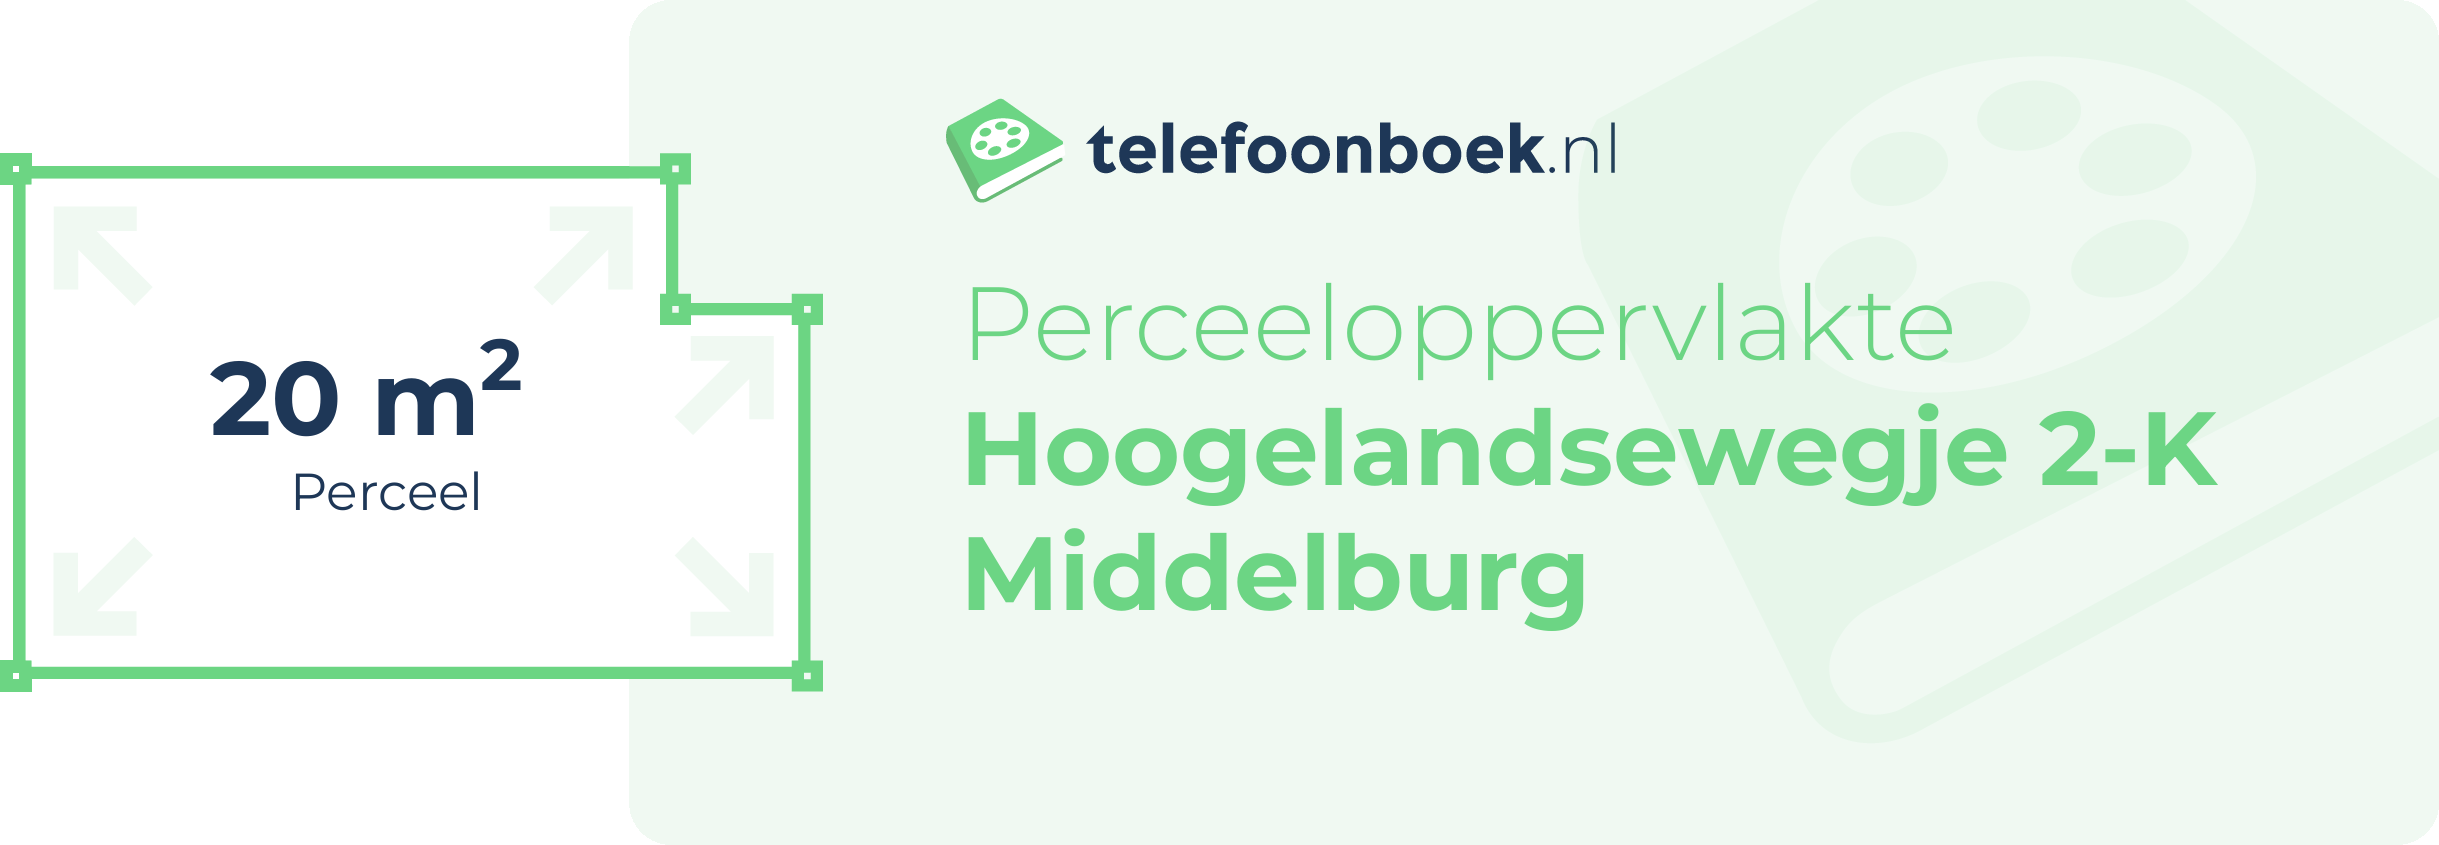 Perceeloppervlakte Hoogelandsewegje 2-K Middelburg